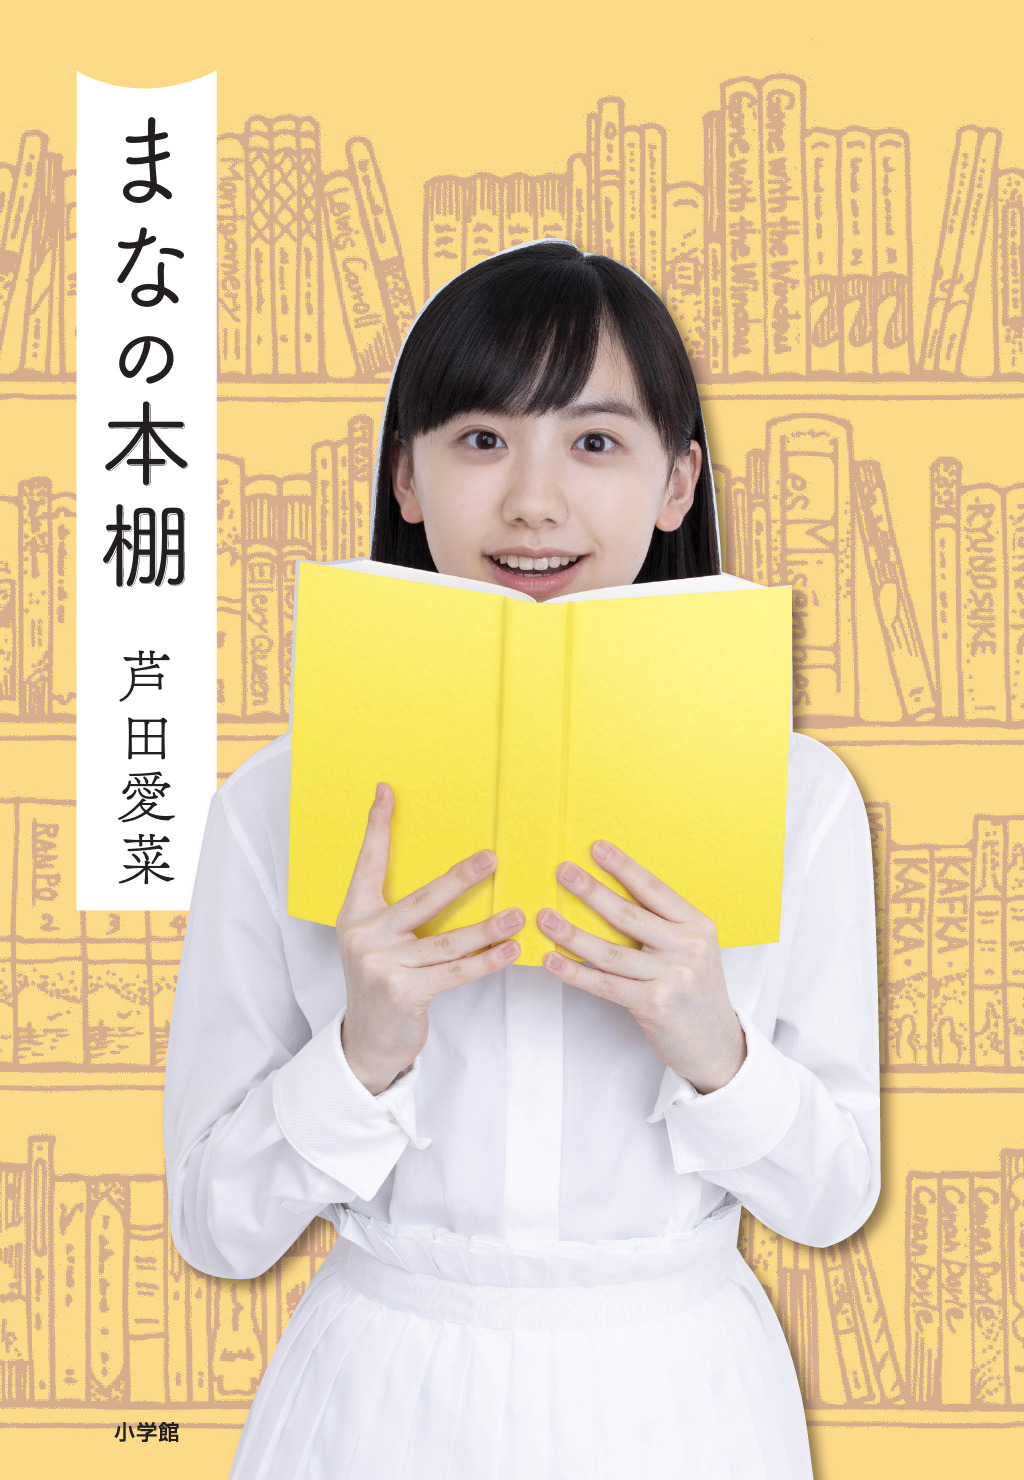 愛菜はホントに本が好き 芦田愛菜 初の単行本 まなの本棚 いよいよ本日発売 株式会社小学館のプレスリリース